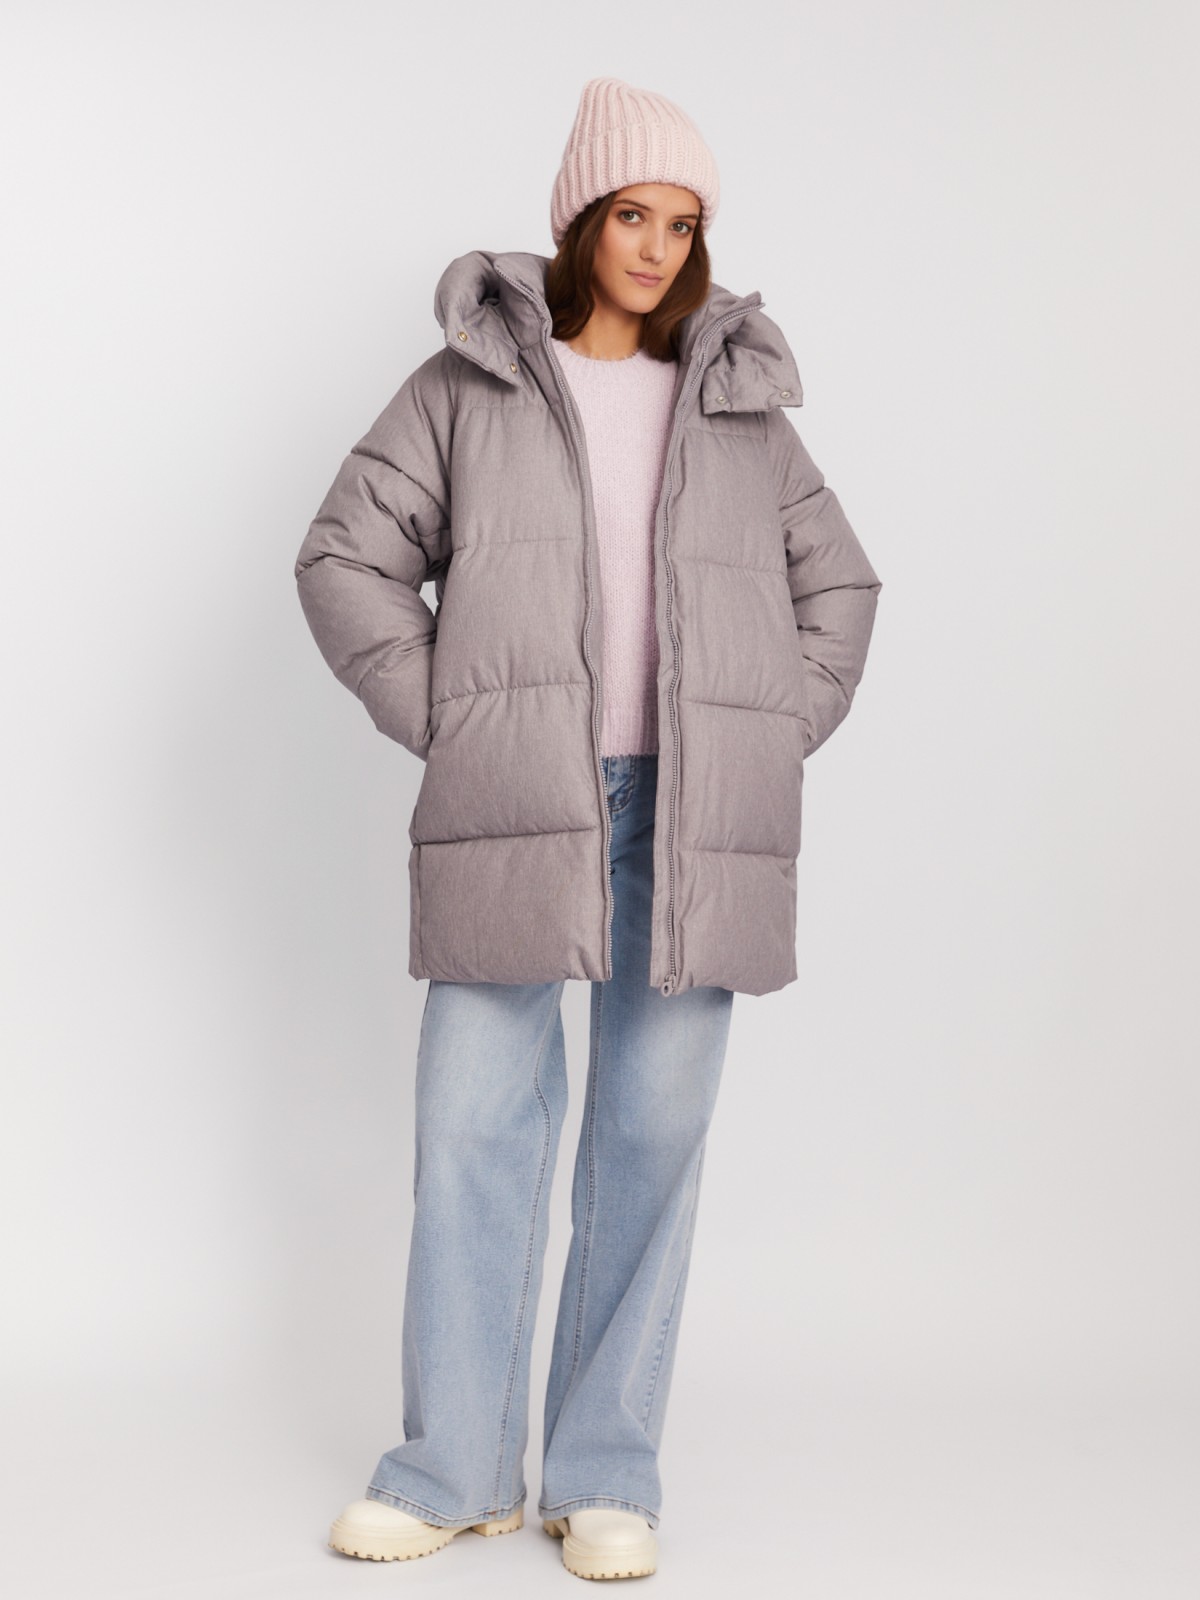 Тёплая куртка-пальто оверсайз силуэта с капюшоном zolla 02342520L124, цвет серый, размер XS - фото 2